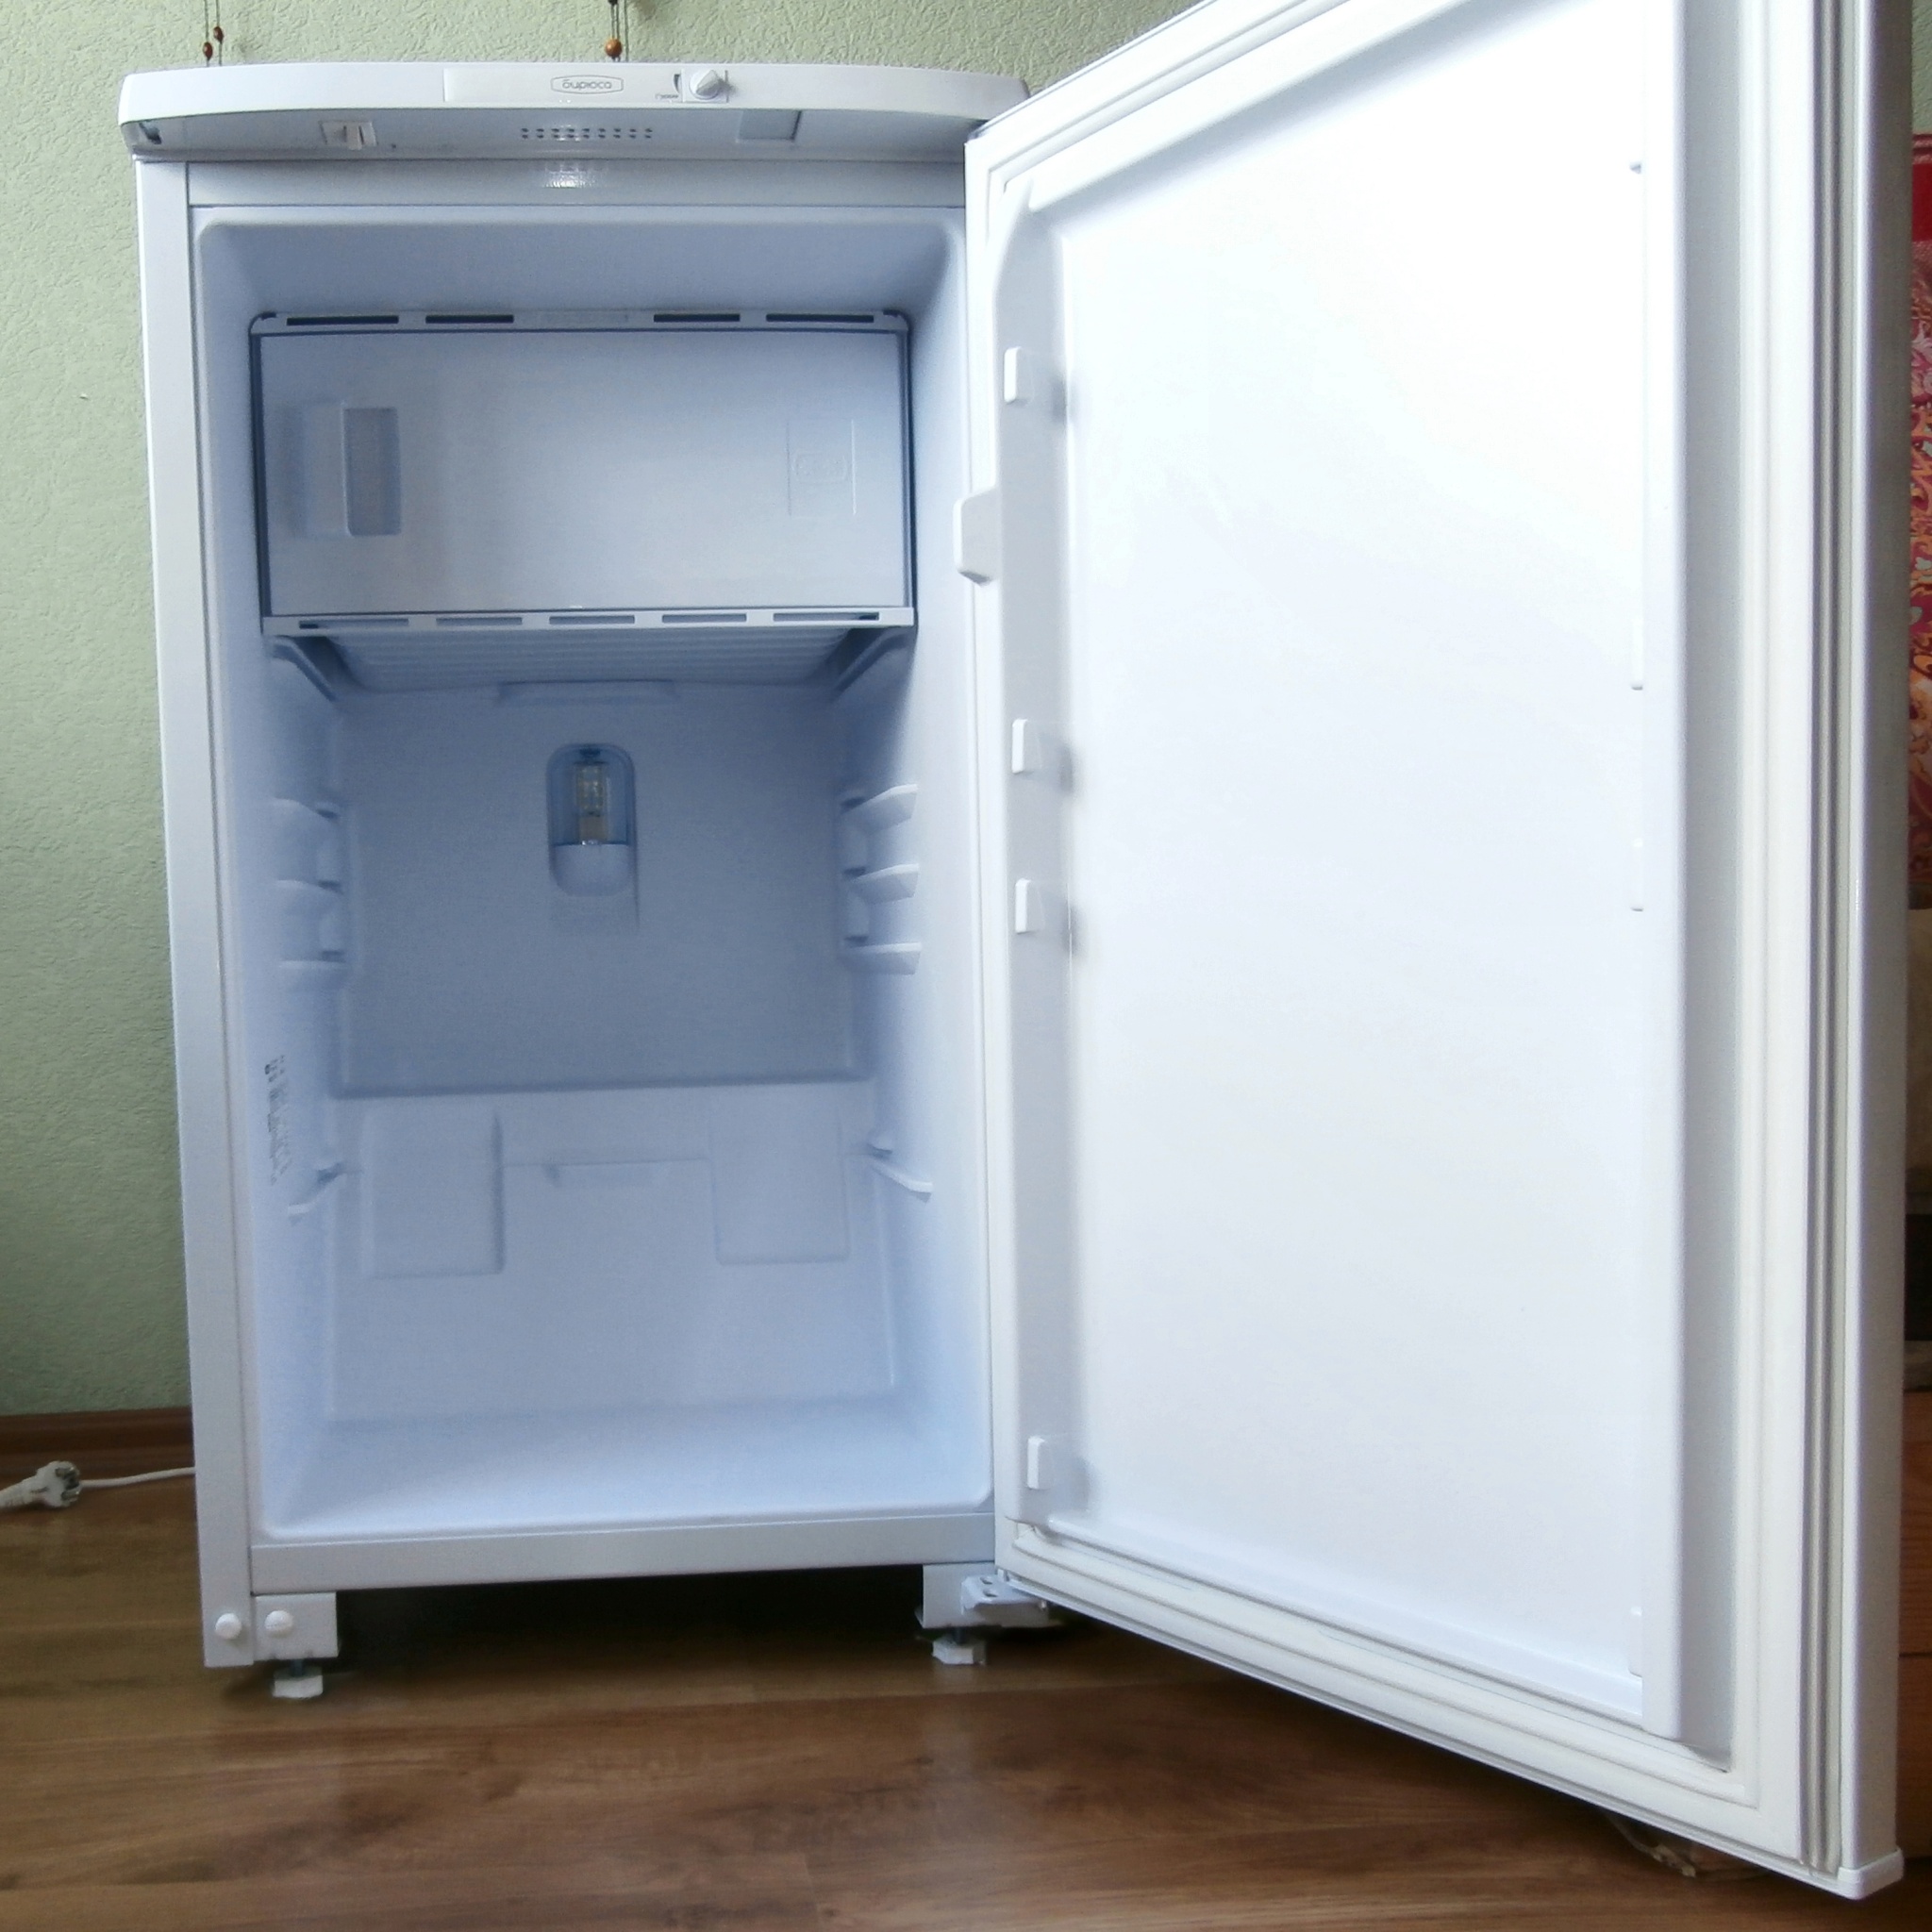 Бирюса 131 холодильник фото